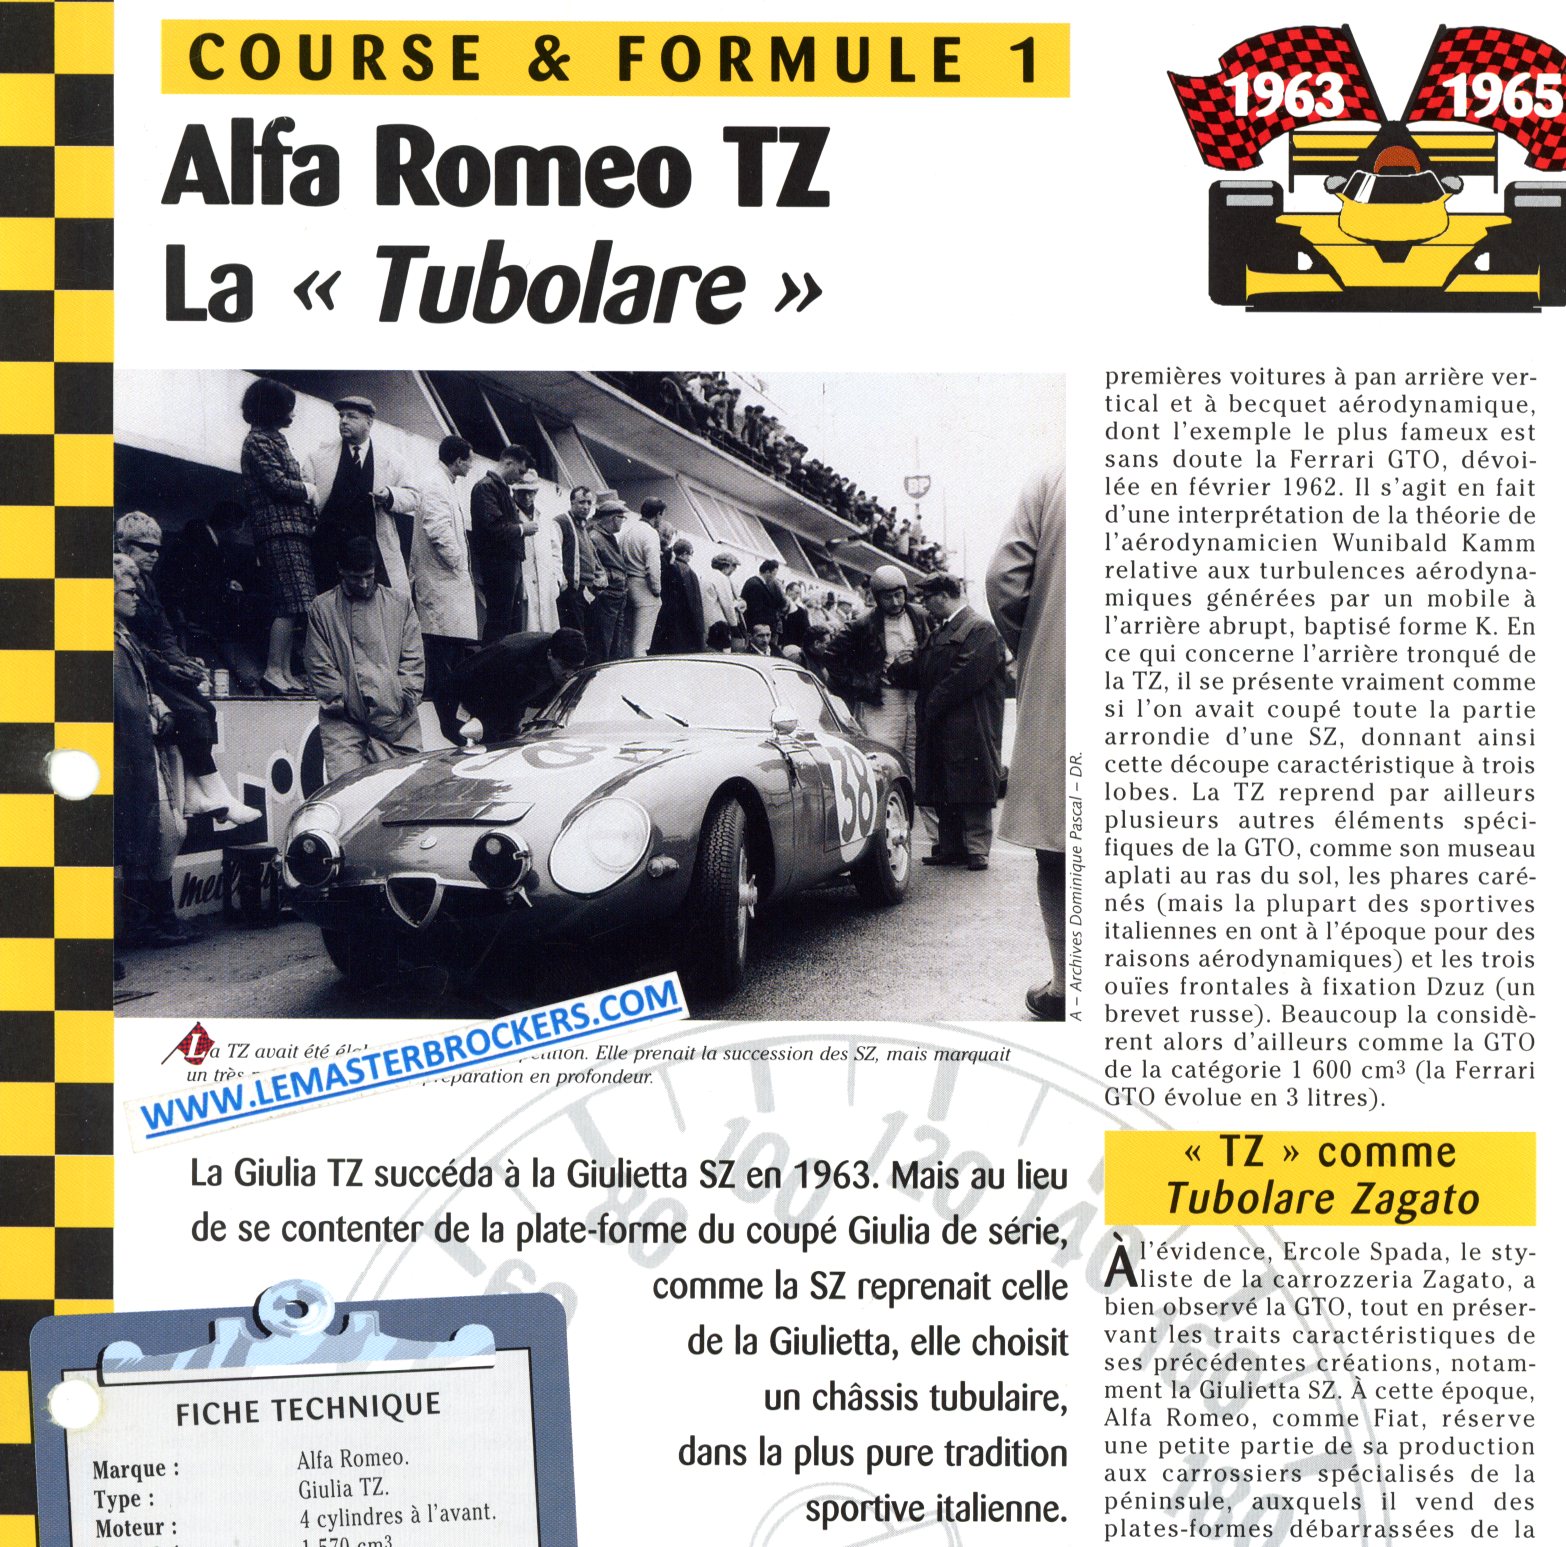 ALFA ROMEO TZ LA TUBOLARE - FICHE COURSE ET FORMULE 1 1963-1965